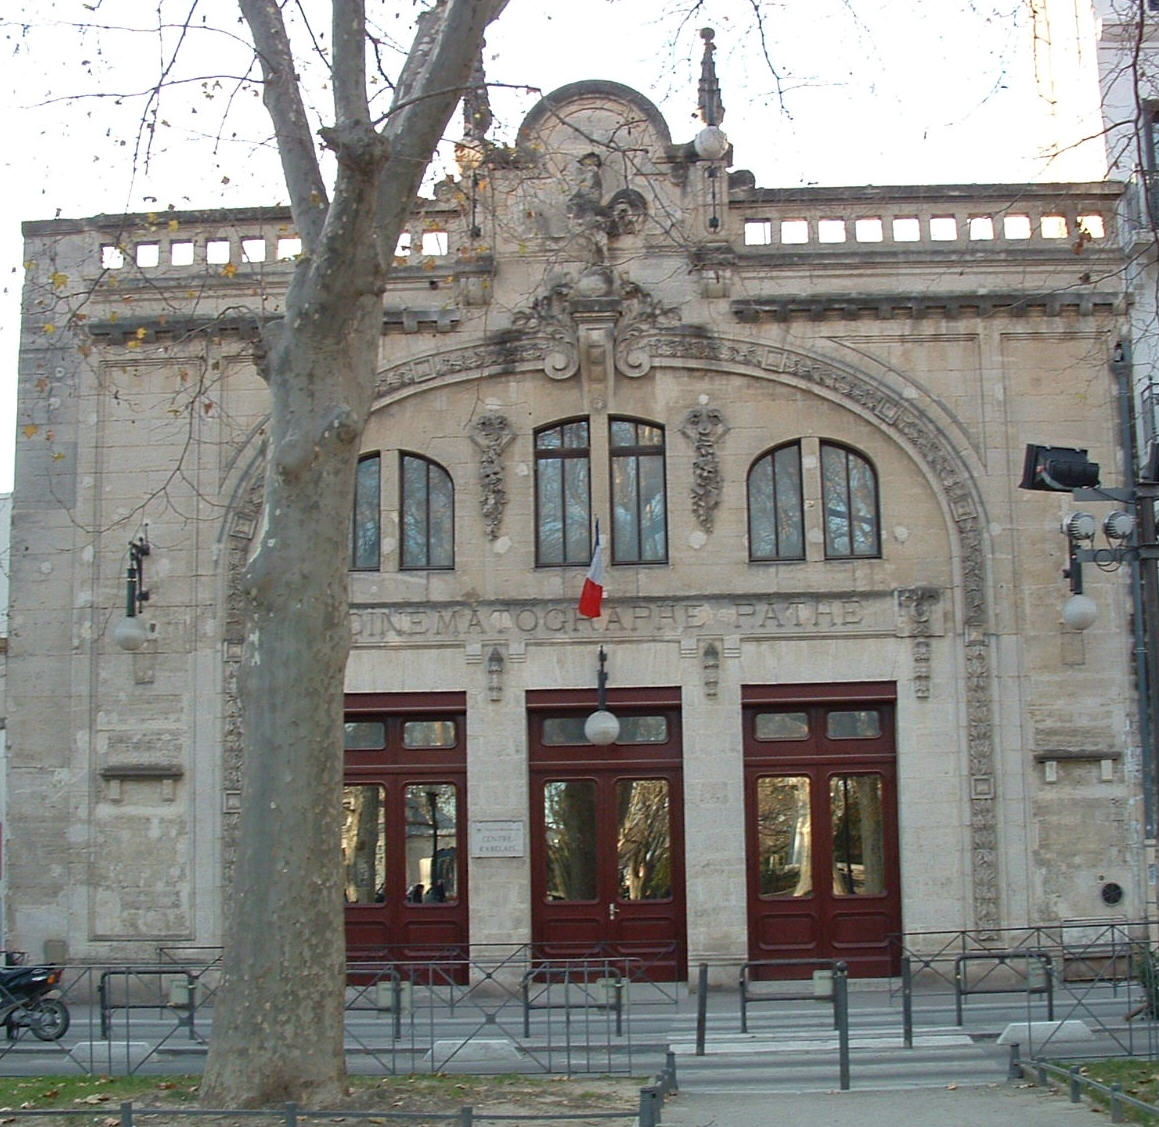 Montpellier: Ancien cinéma Pathé 